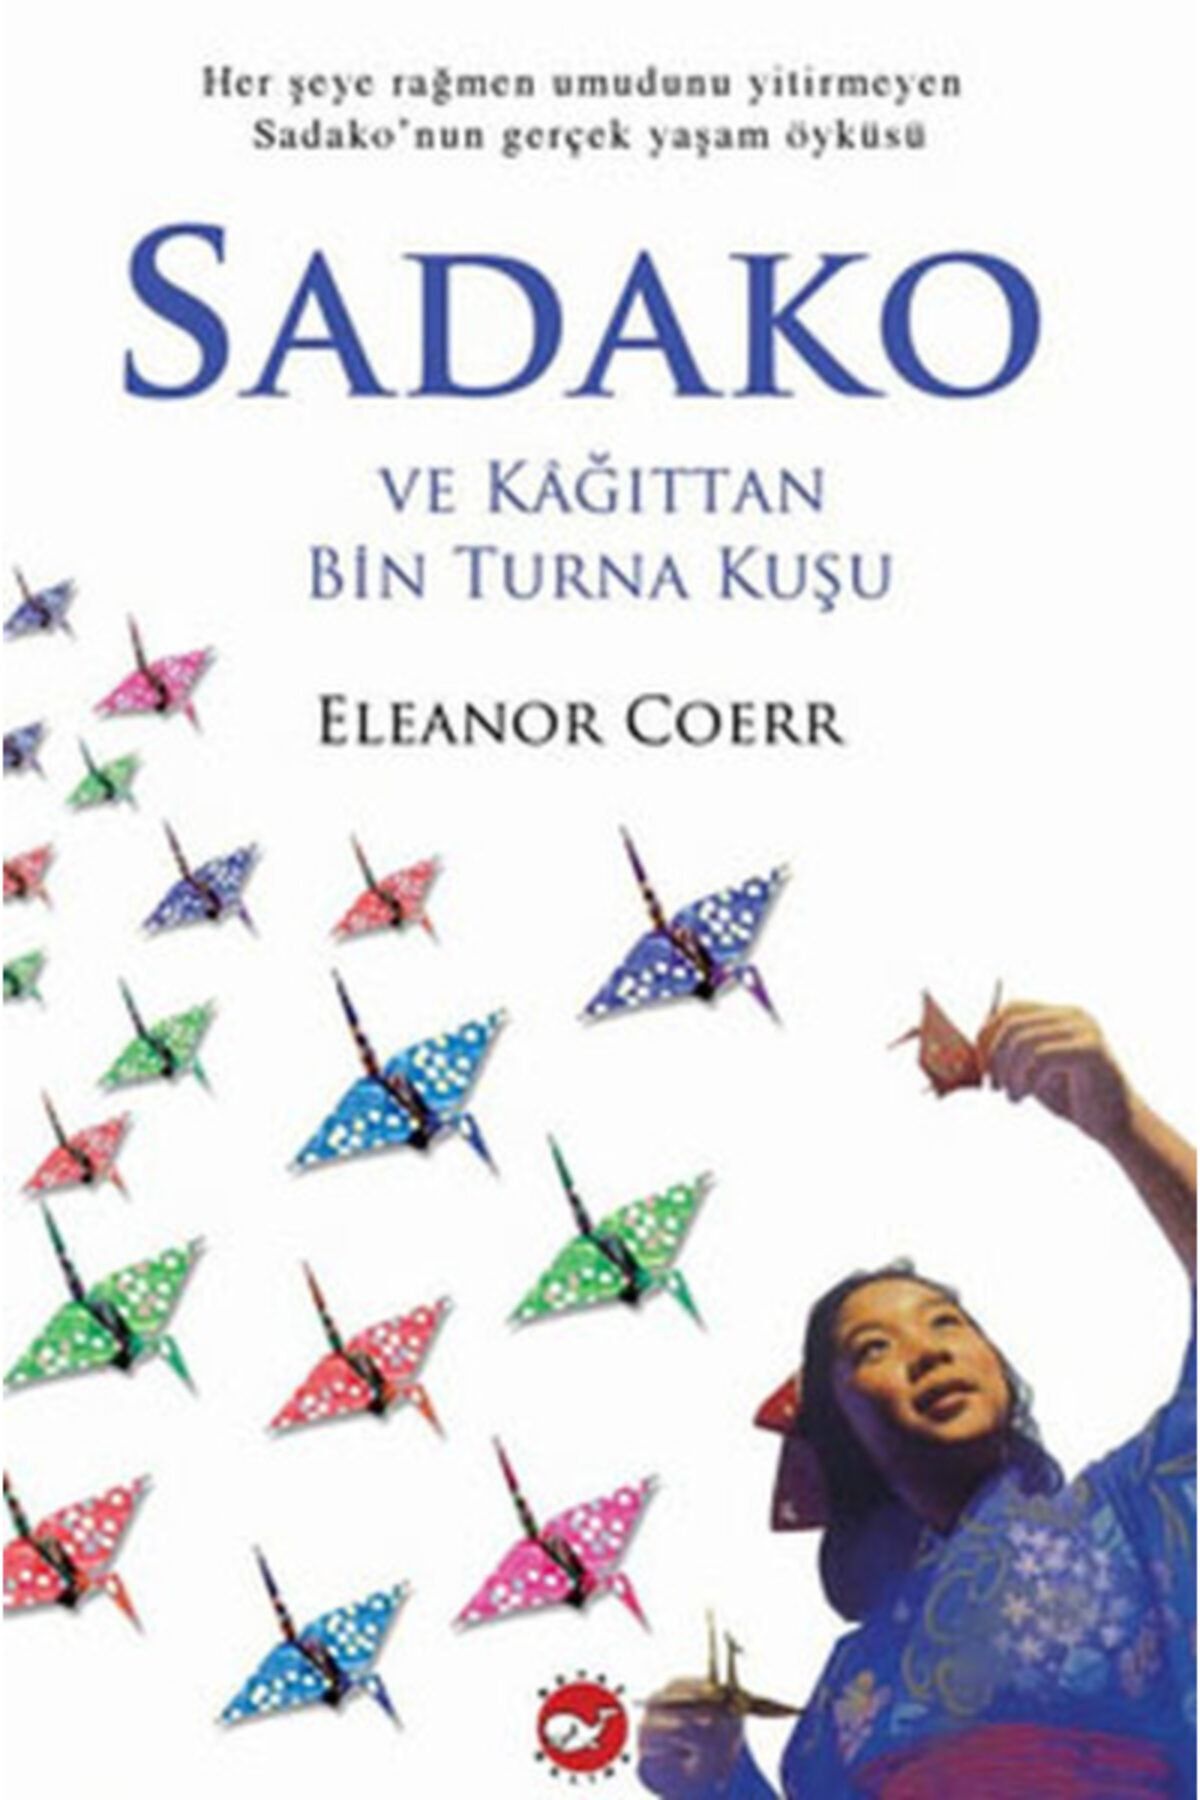 Beyaz Balina Yayınları Sadako - (herşeye Rağmen Umudunu Yitirmeyen Sadako'nun Gerçek Yaşam Öyküsü)